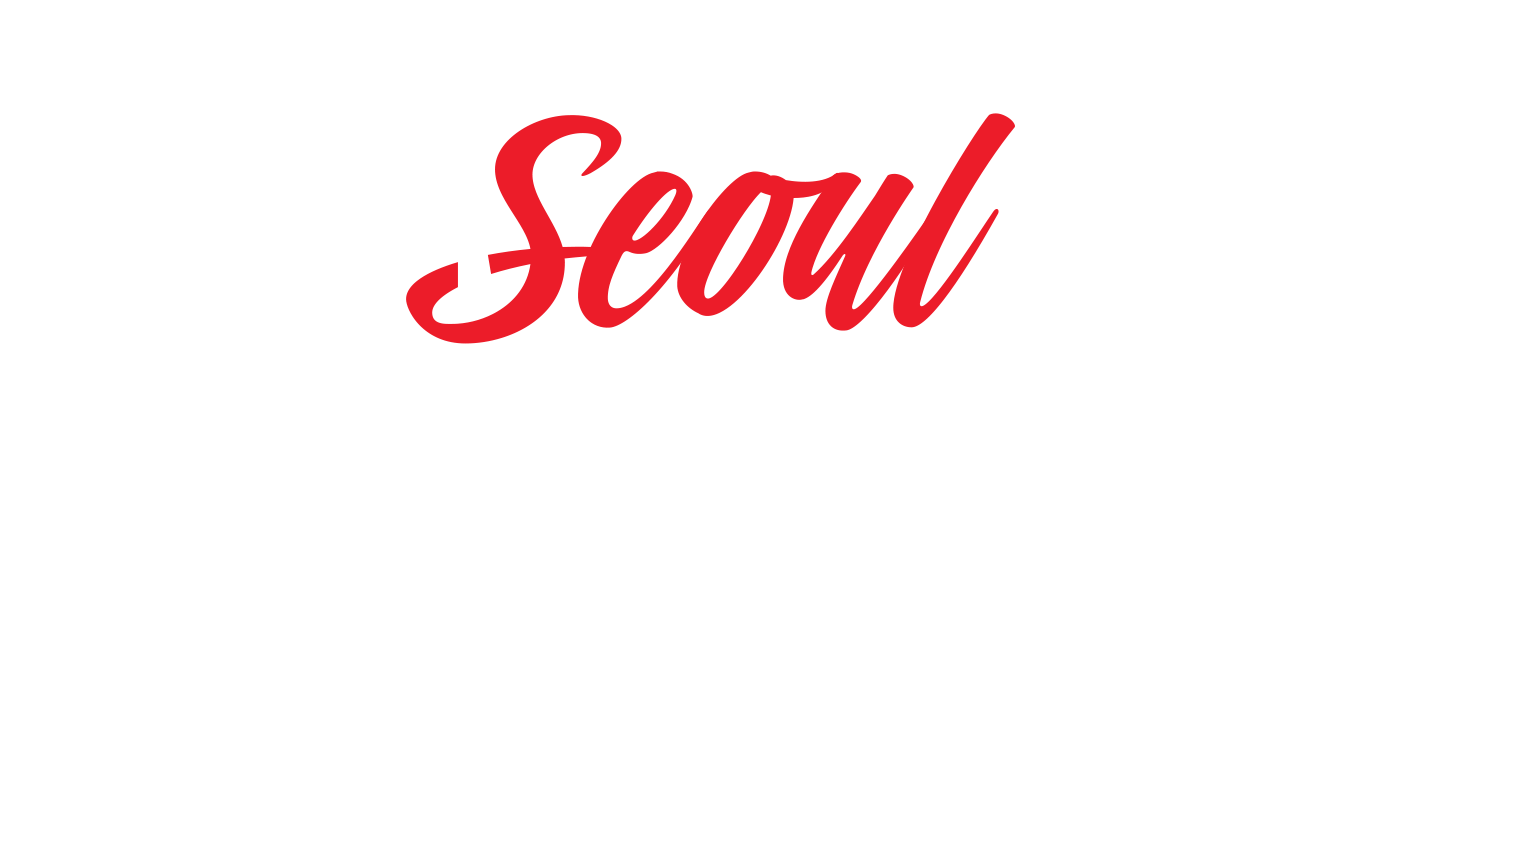 Seoul Comic Con